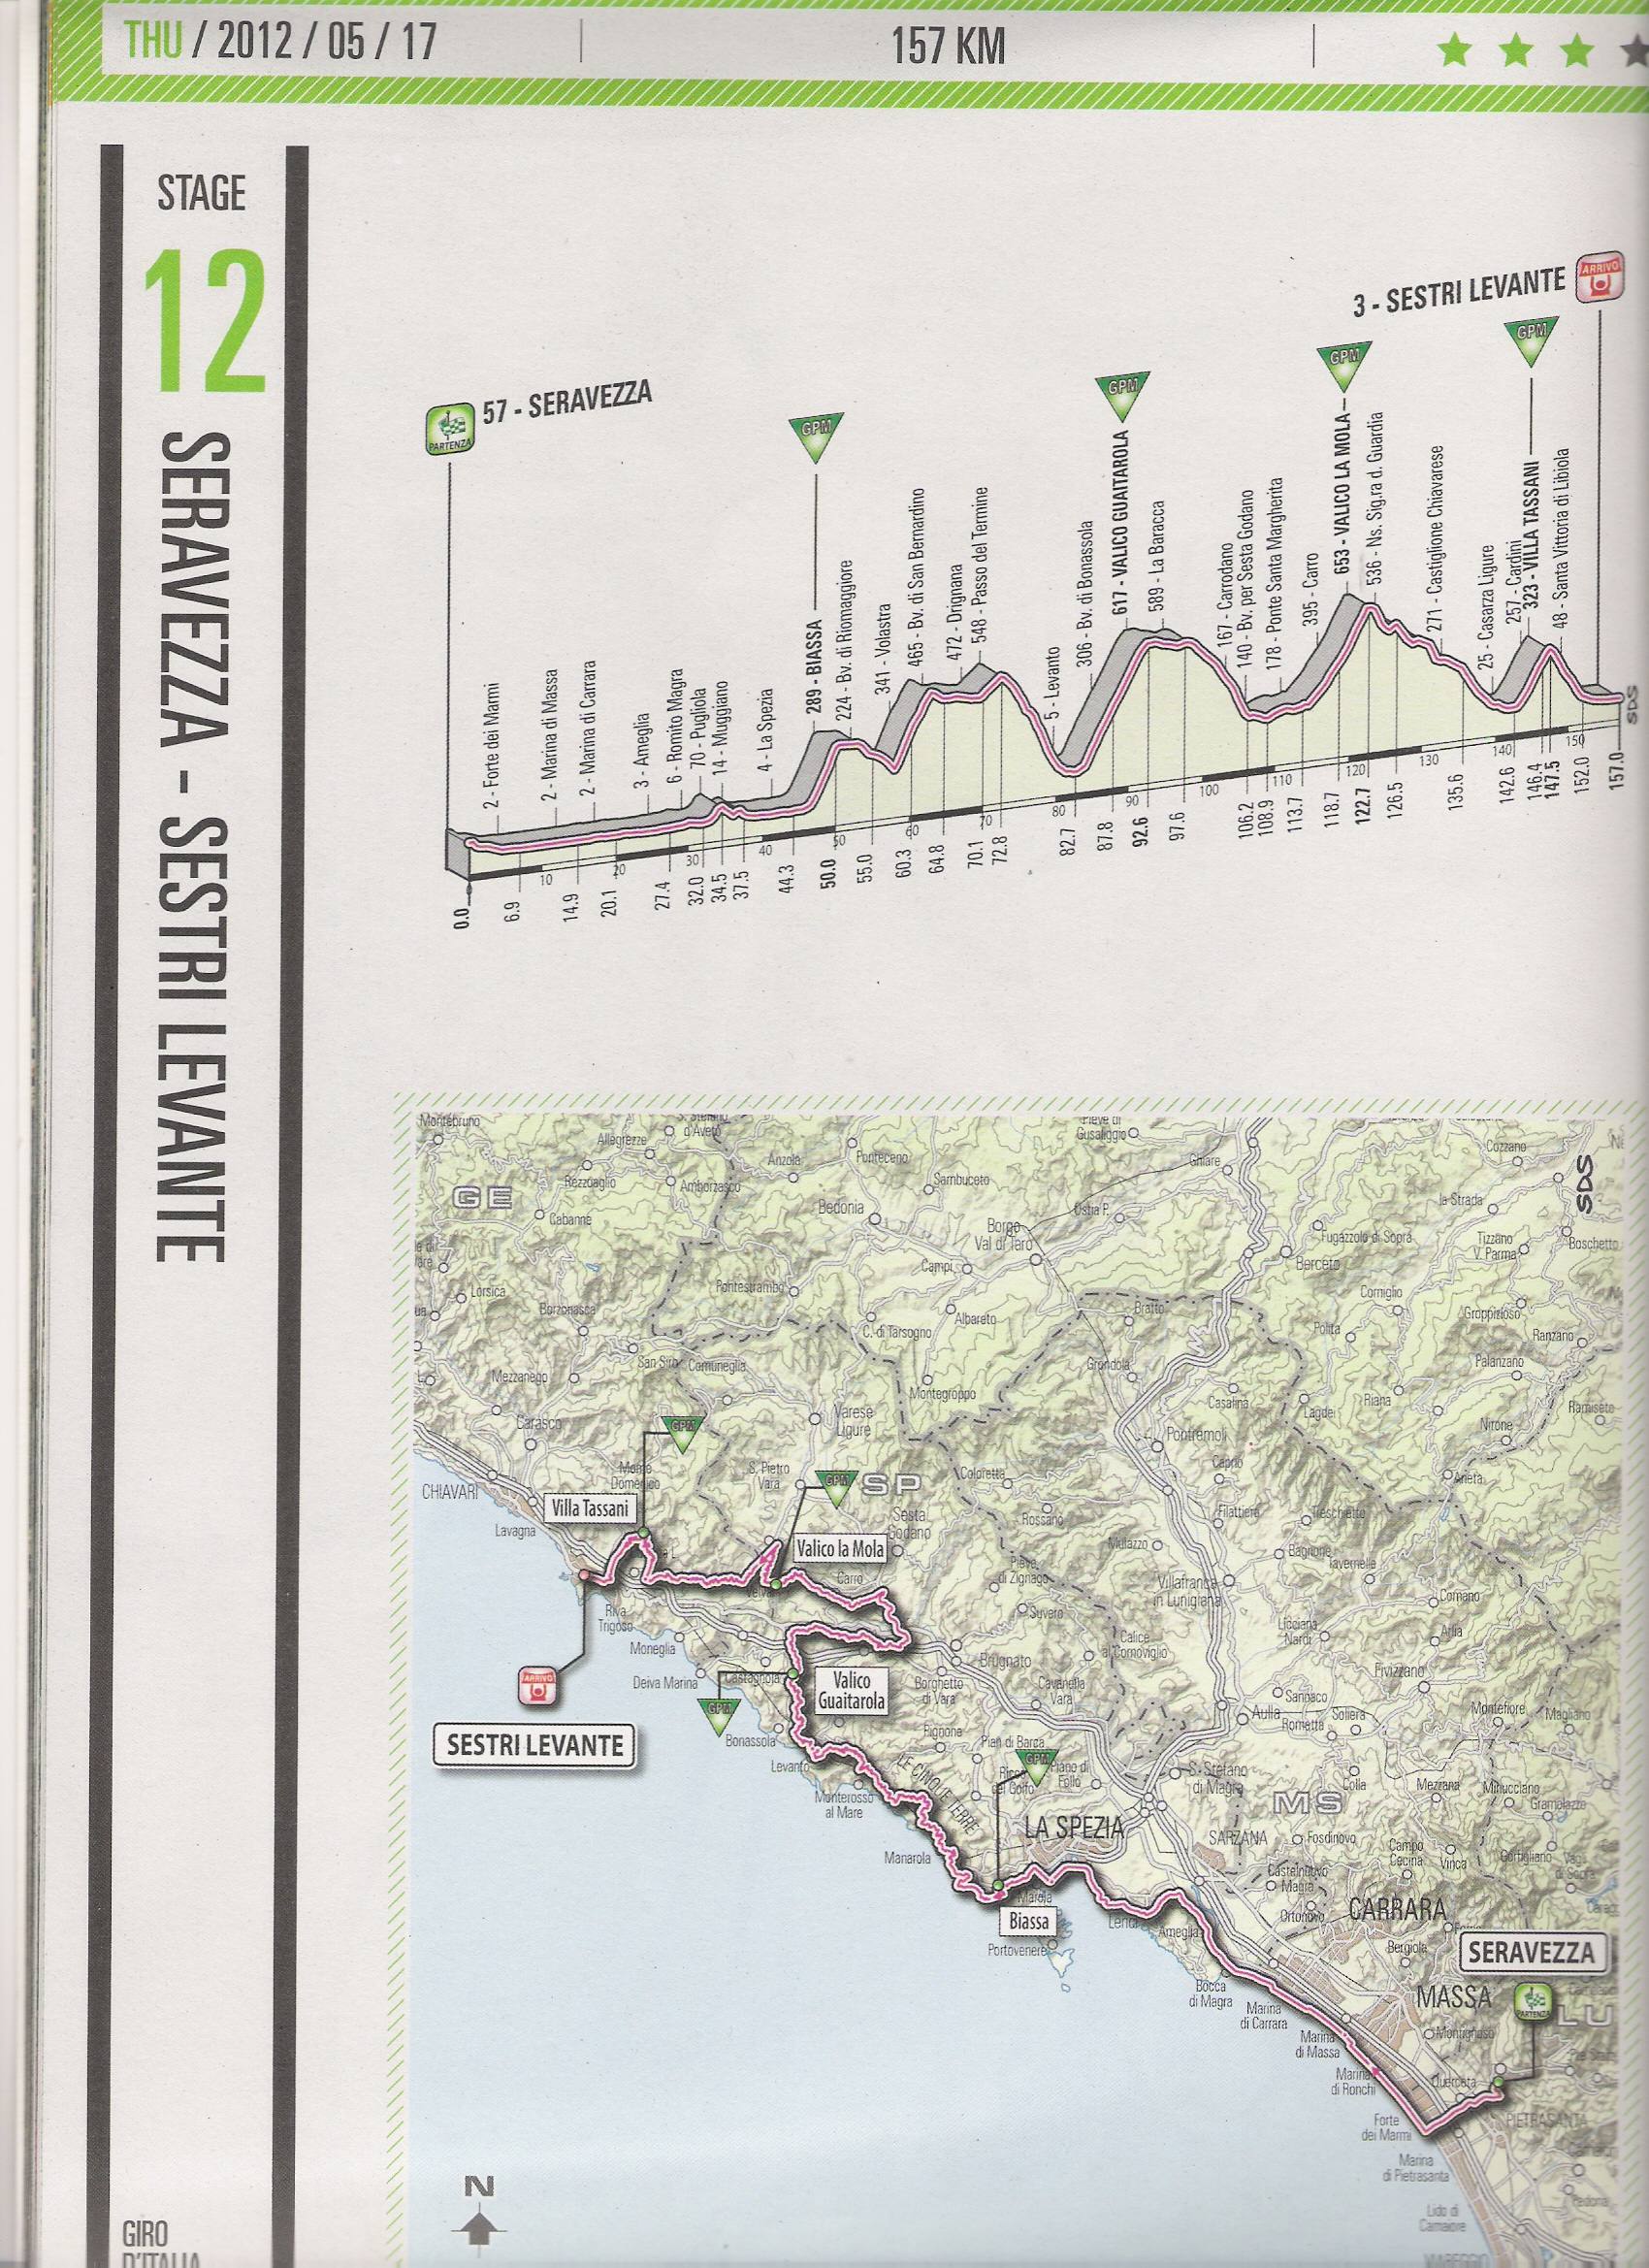 Giro d’Italia: l’arrivo a Sestri Levante dopo 4 gran premi della montagna